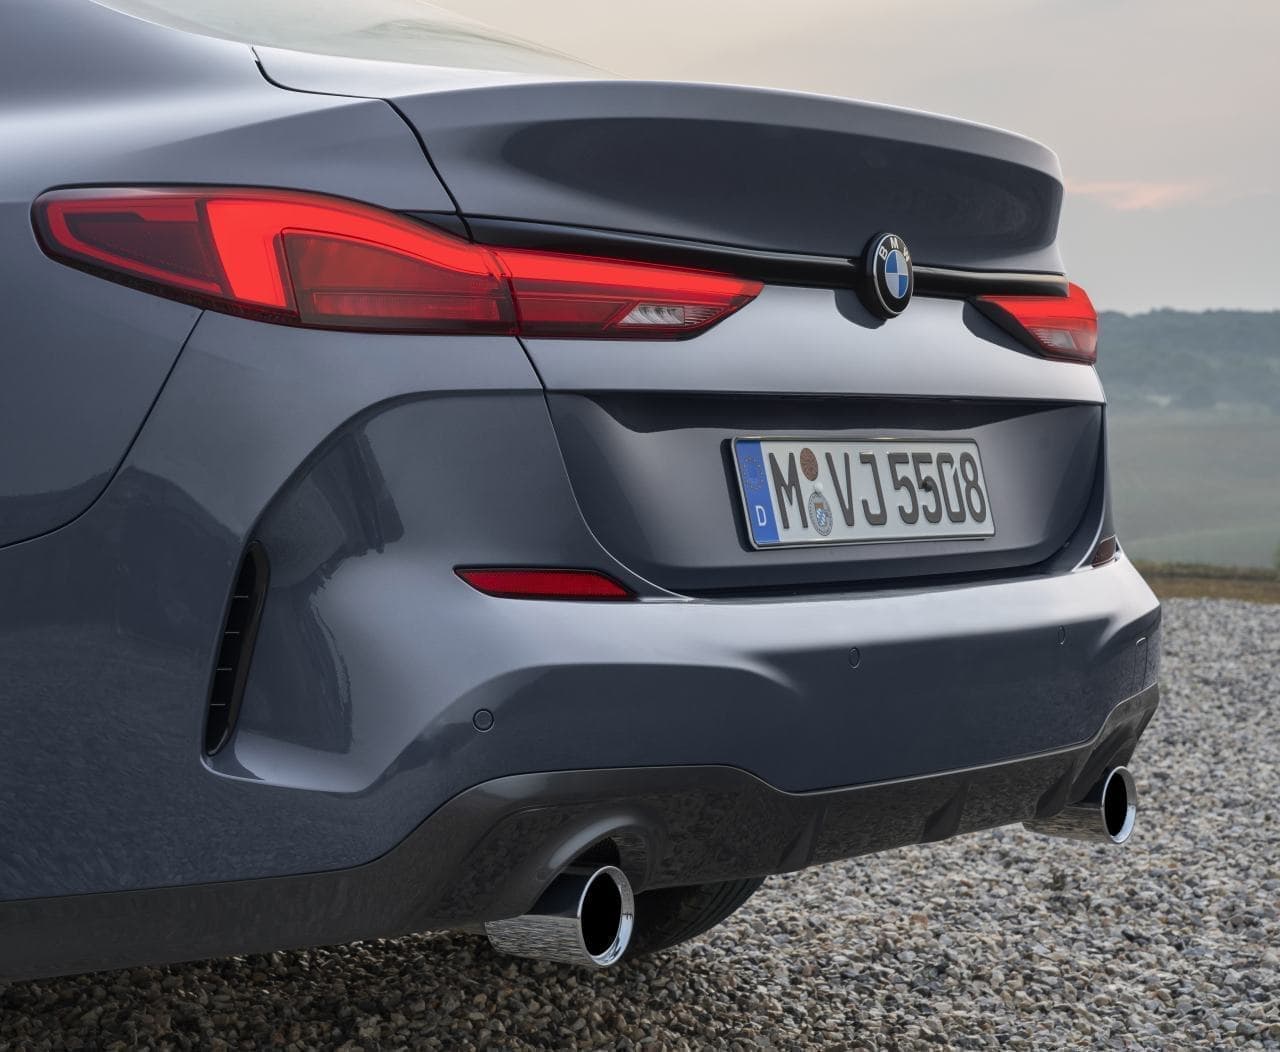 BMWが2シリーズ「グランクーペ」を公開